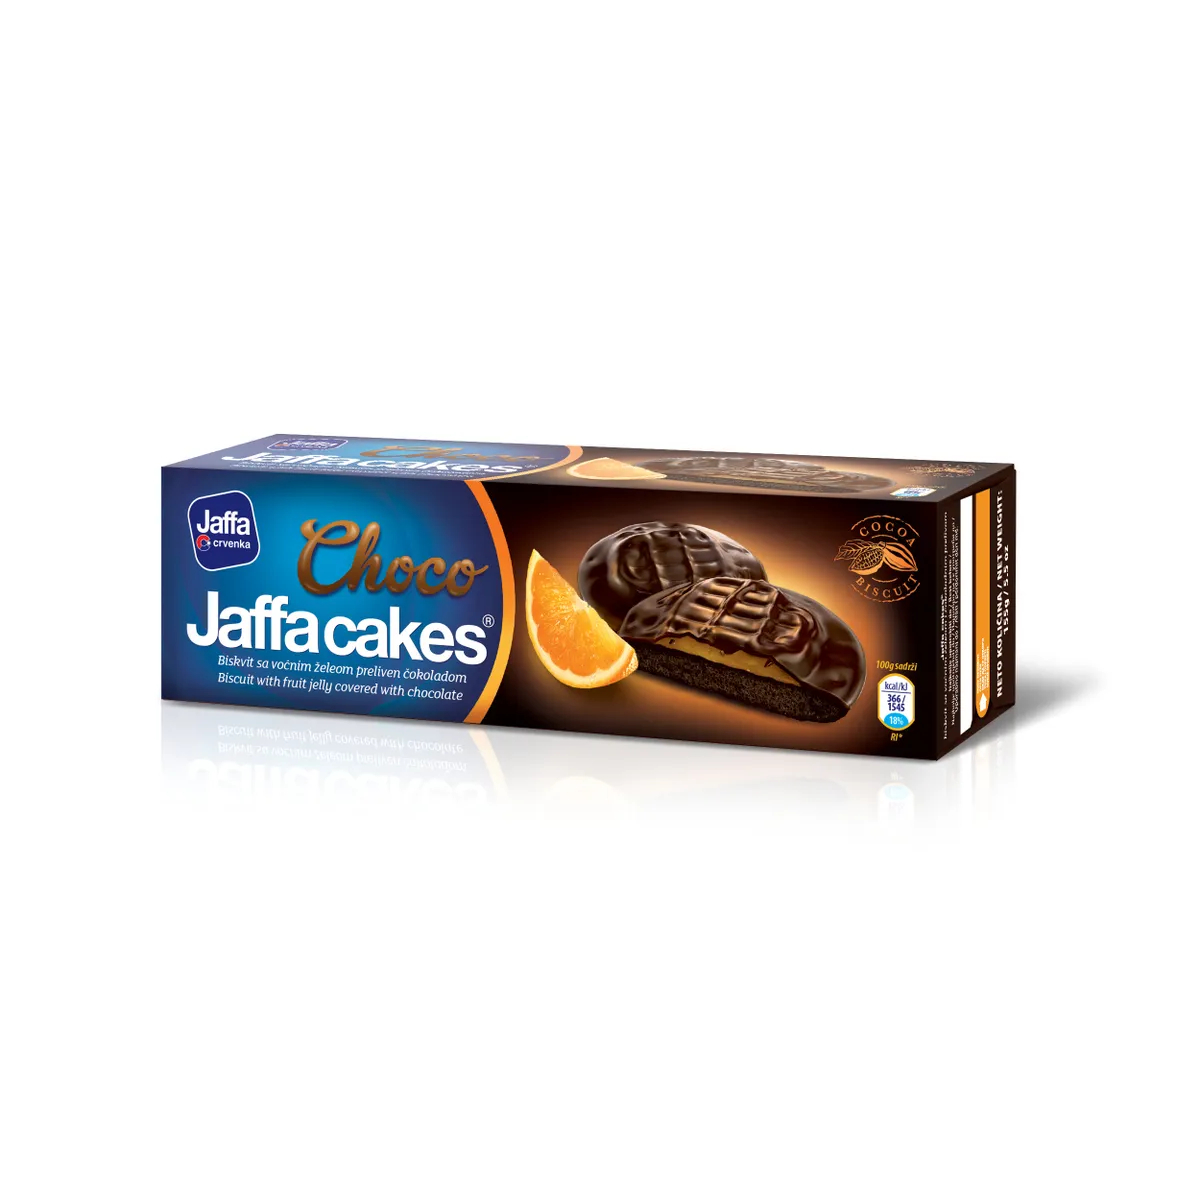 Печенье бисквитное Jaffa cakes Шоколад, 155 г печенье бисквитное jaffa cakes шоколад вишня 155 г